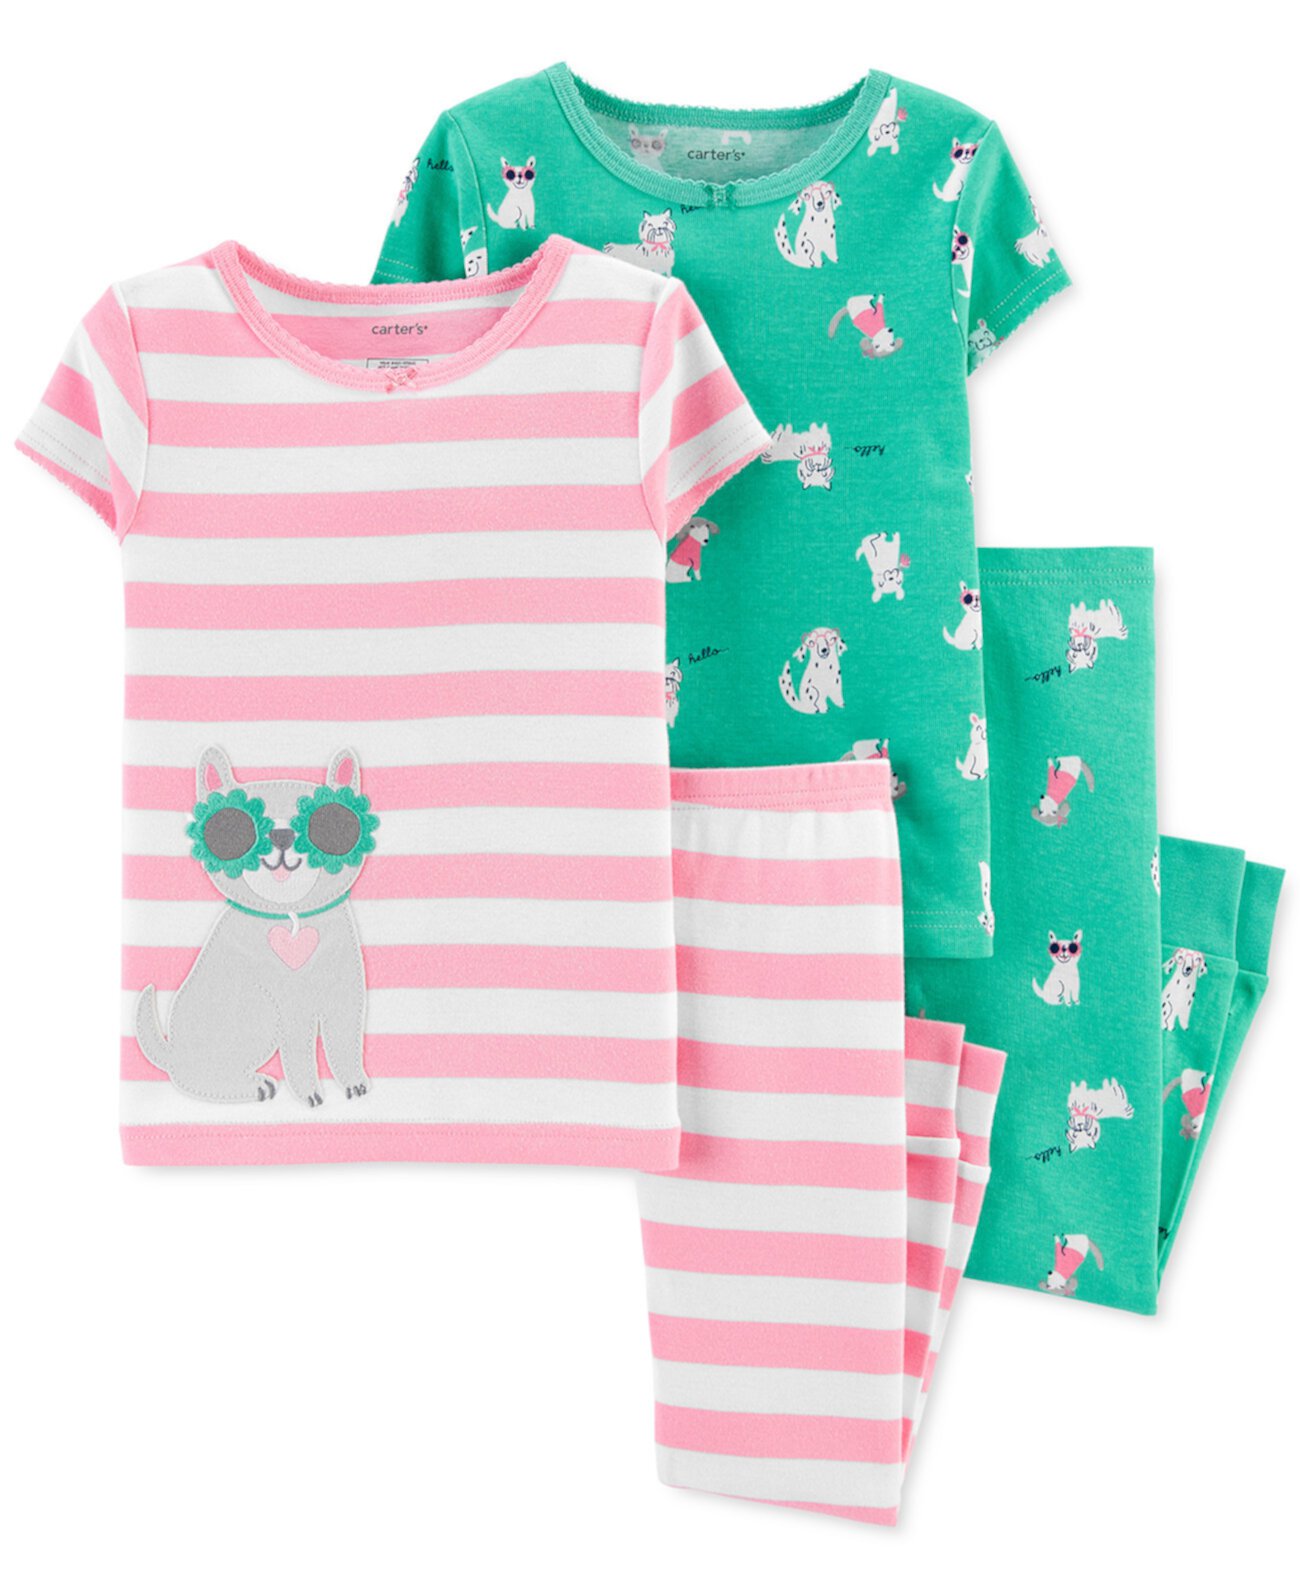 Toddler Girls 4-Pc. Хлопковый пижамный набор для собак Carter's